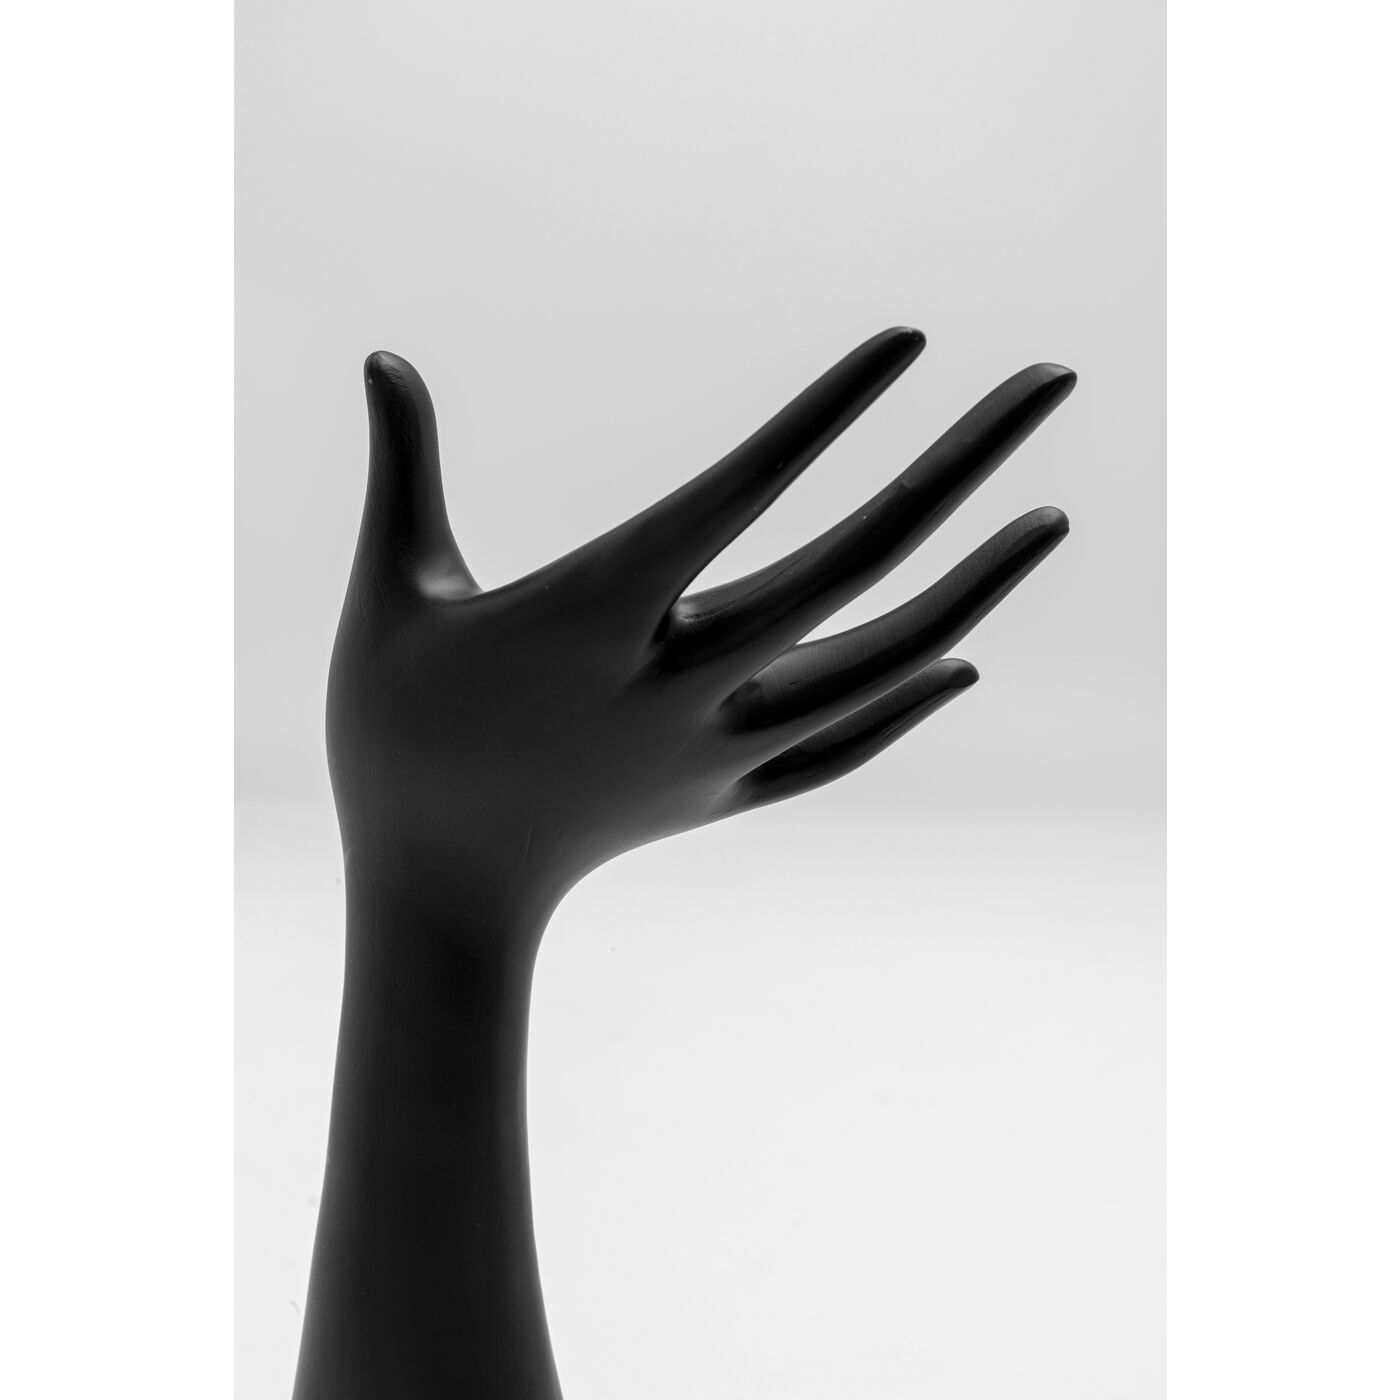 Черная рука для украшений. 34776 Декоративная рука "Servus Pop" 19 см Kare Desing. Подставка для дизайна фотошопа. Руки collection